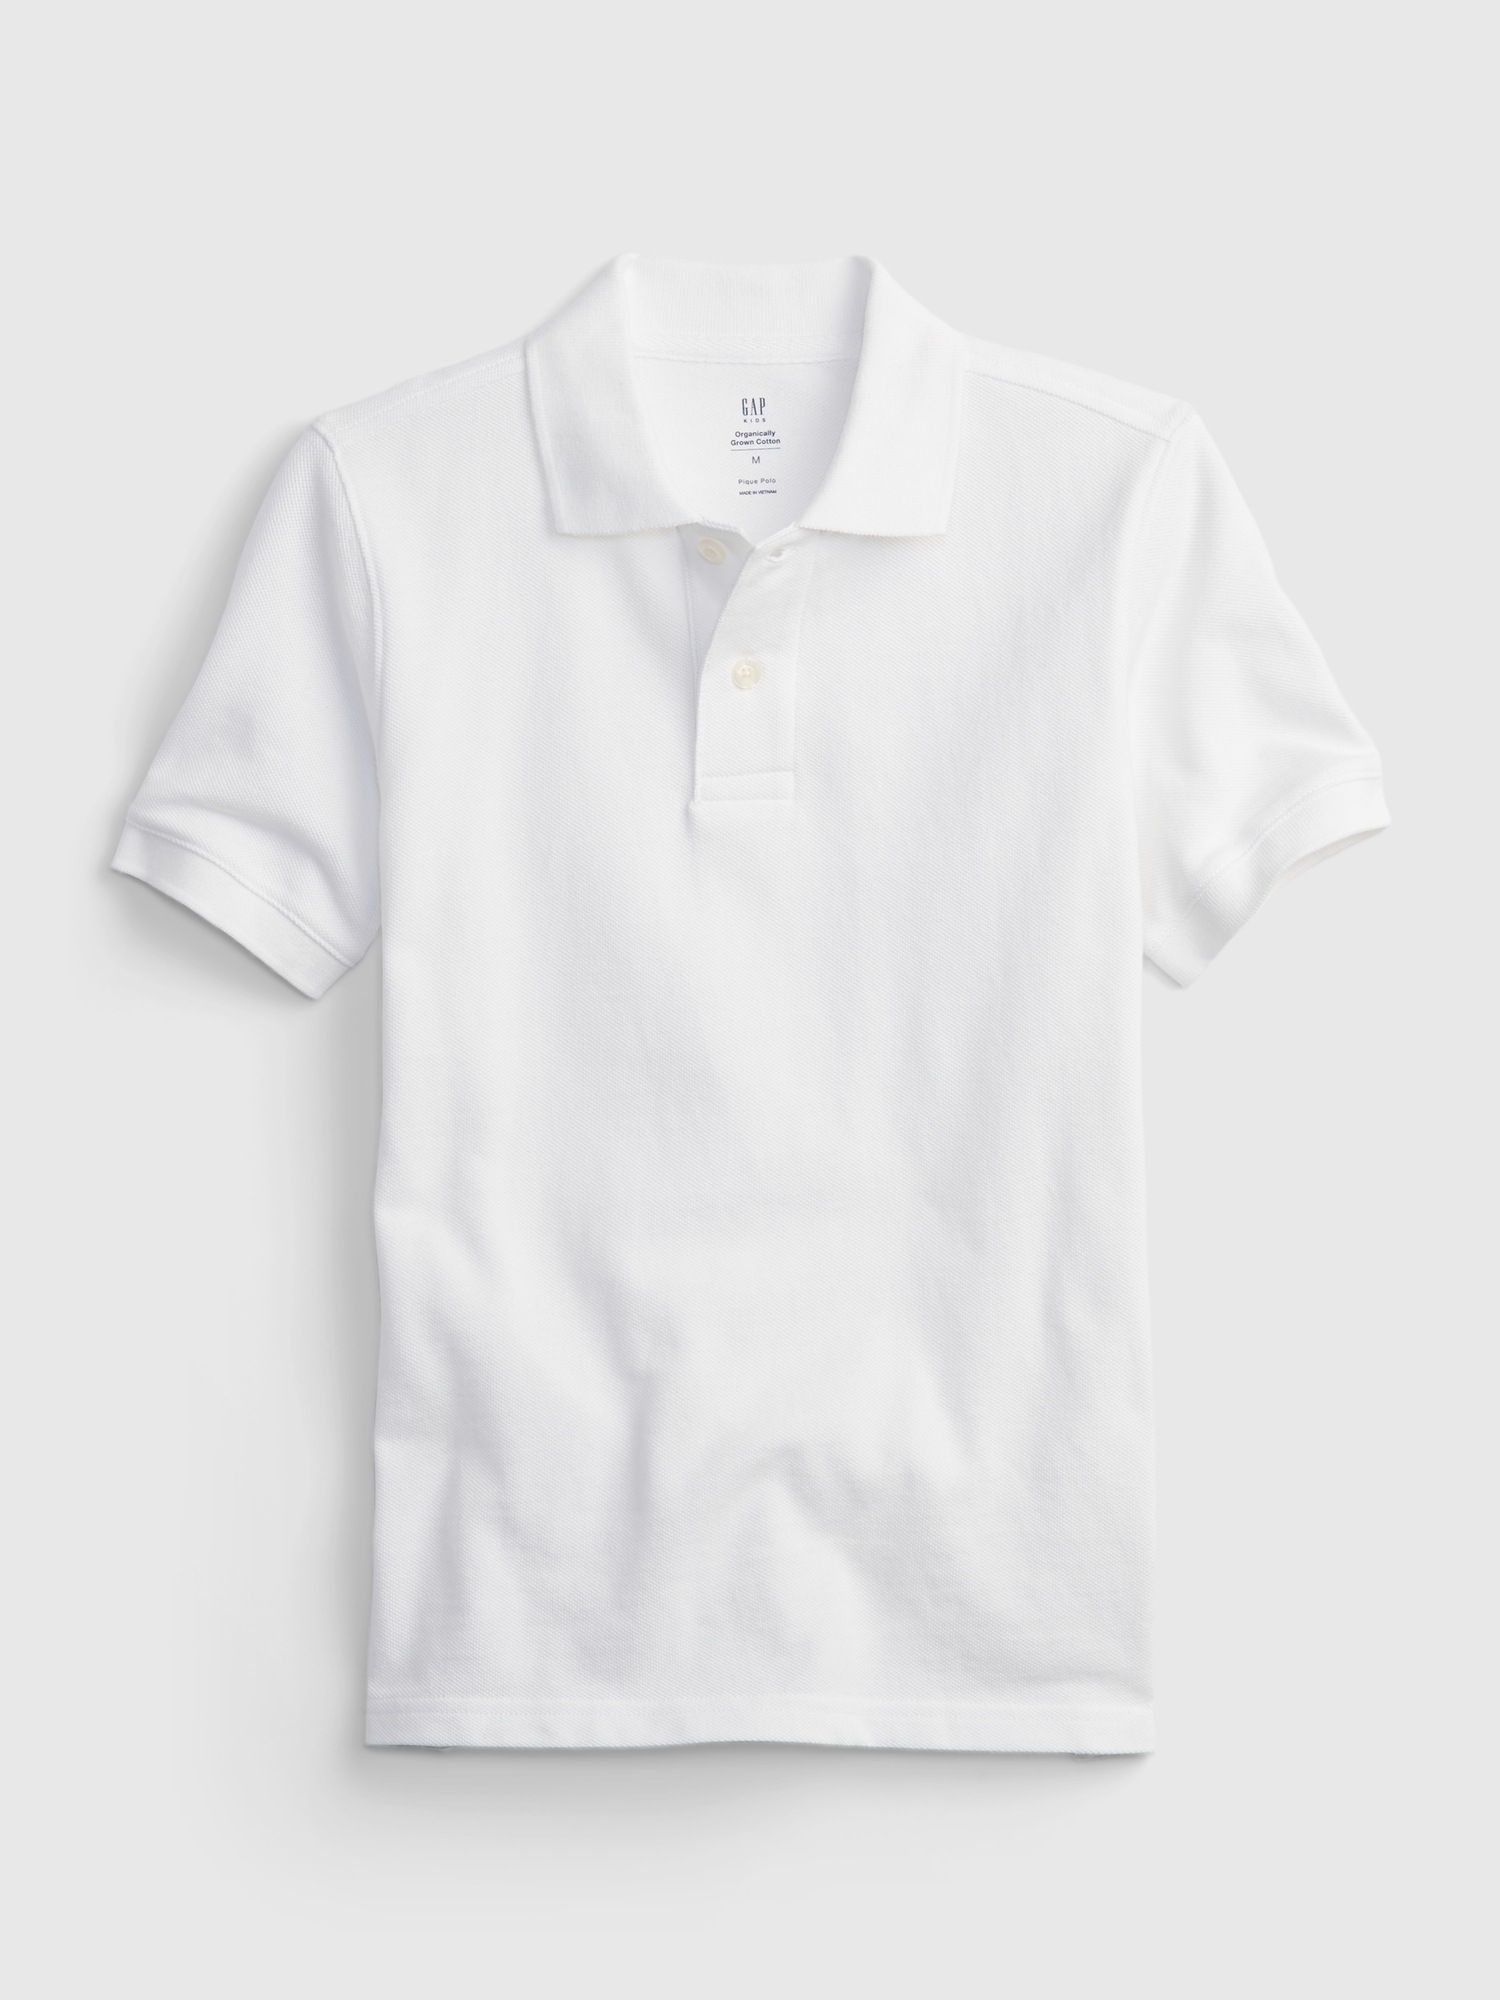 Gap Kids Organic Cotton Uniform Polo Shirt white. 1